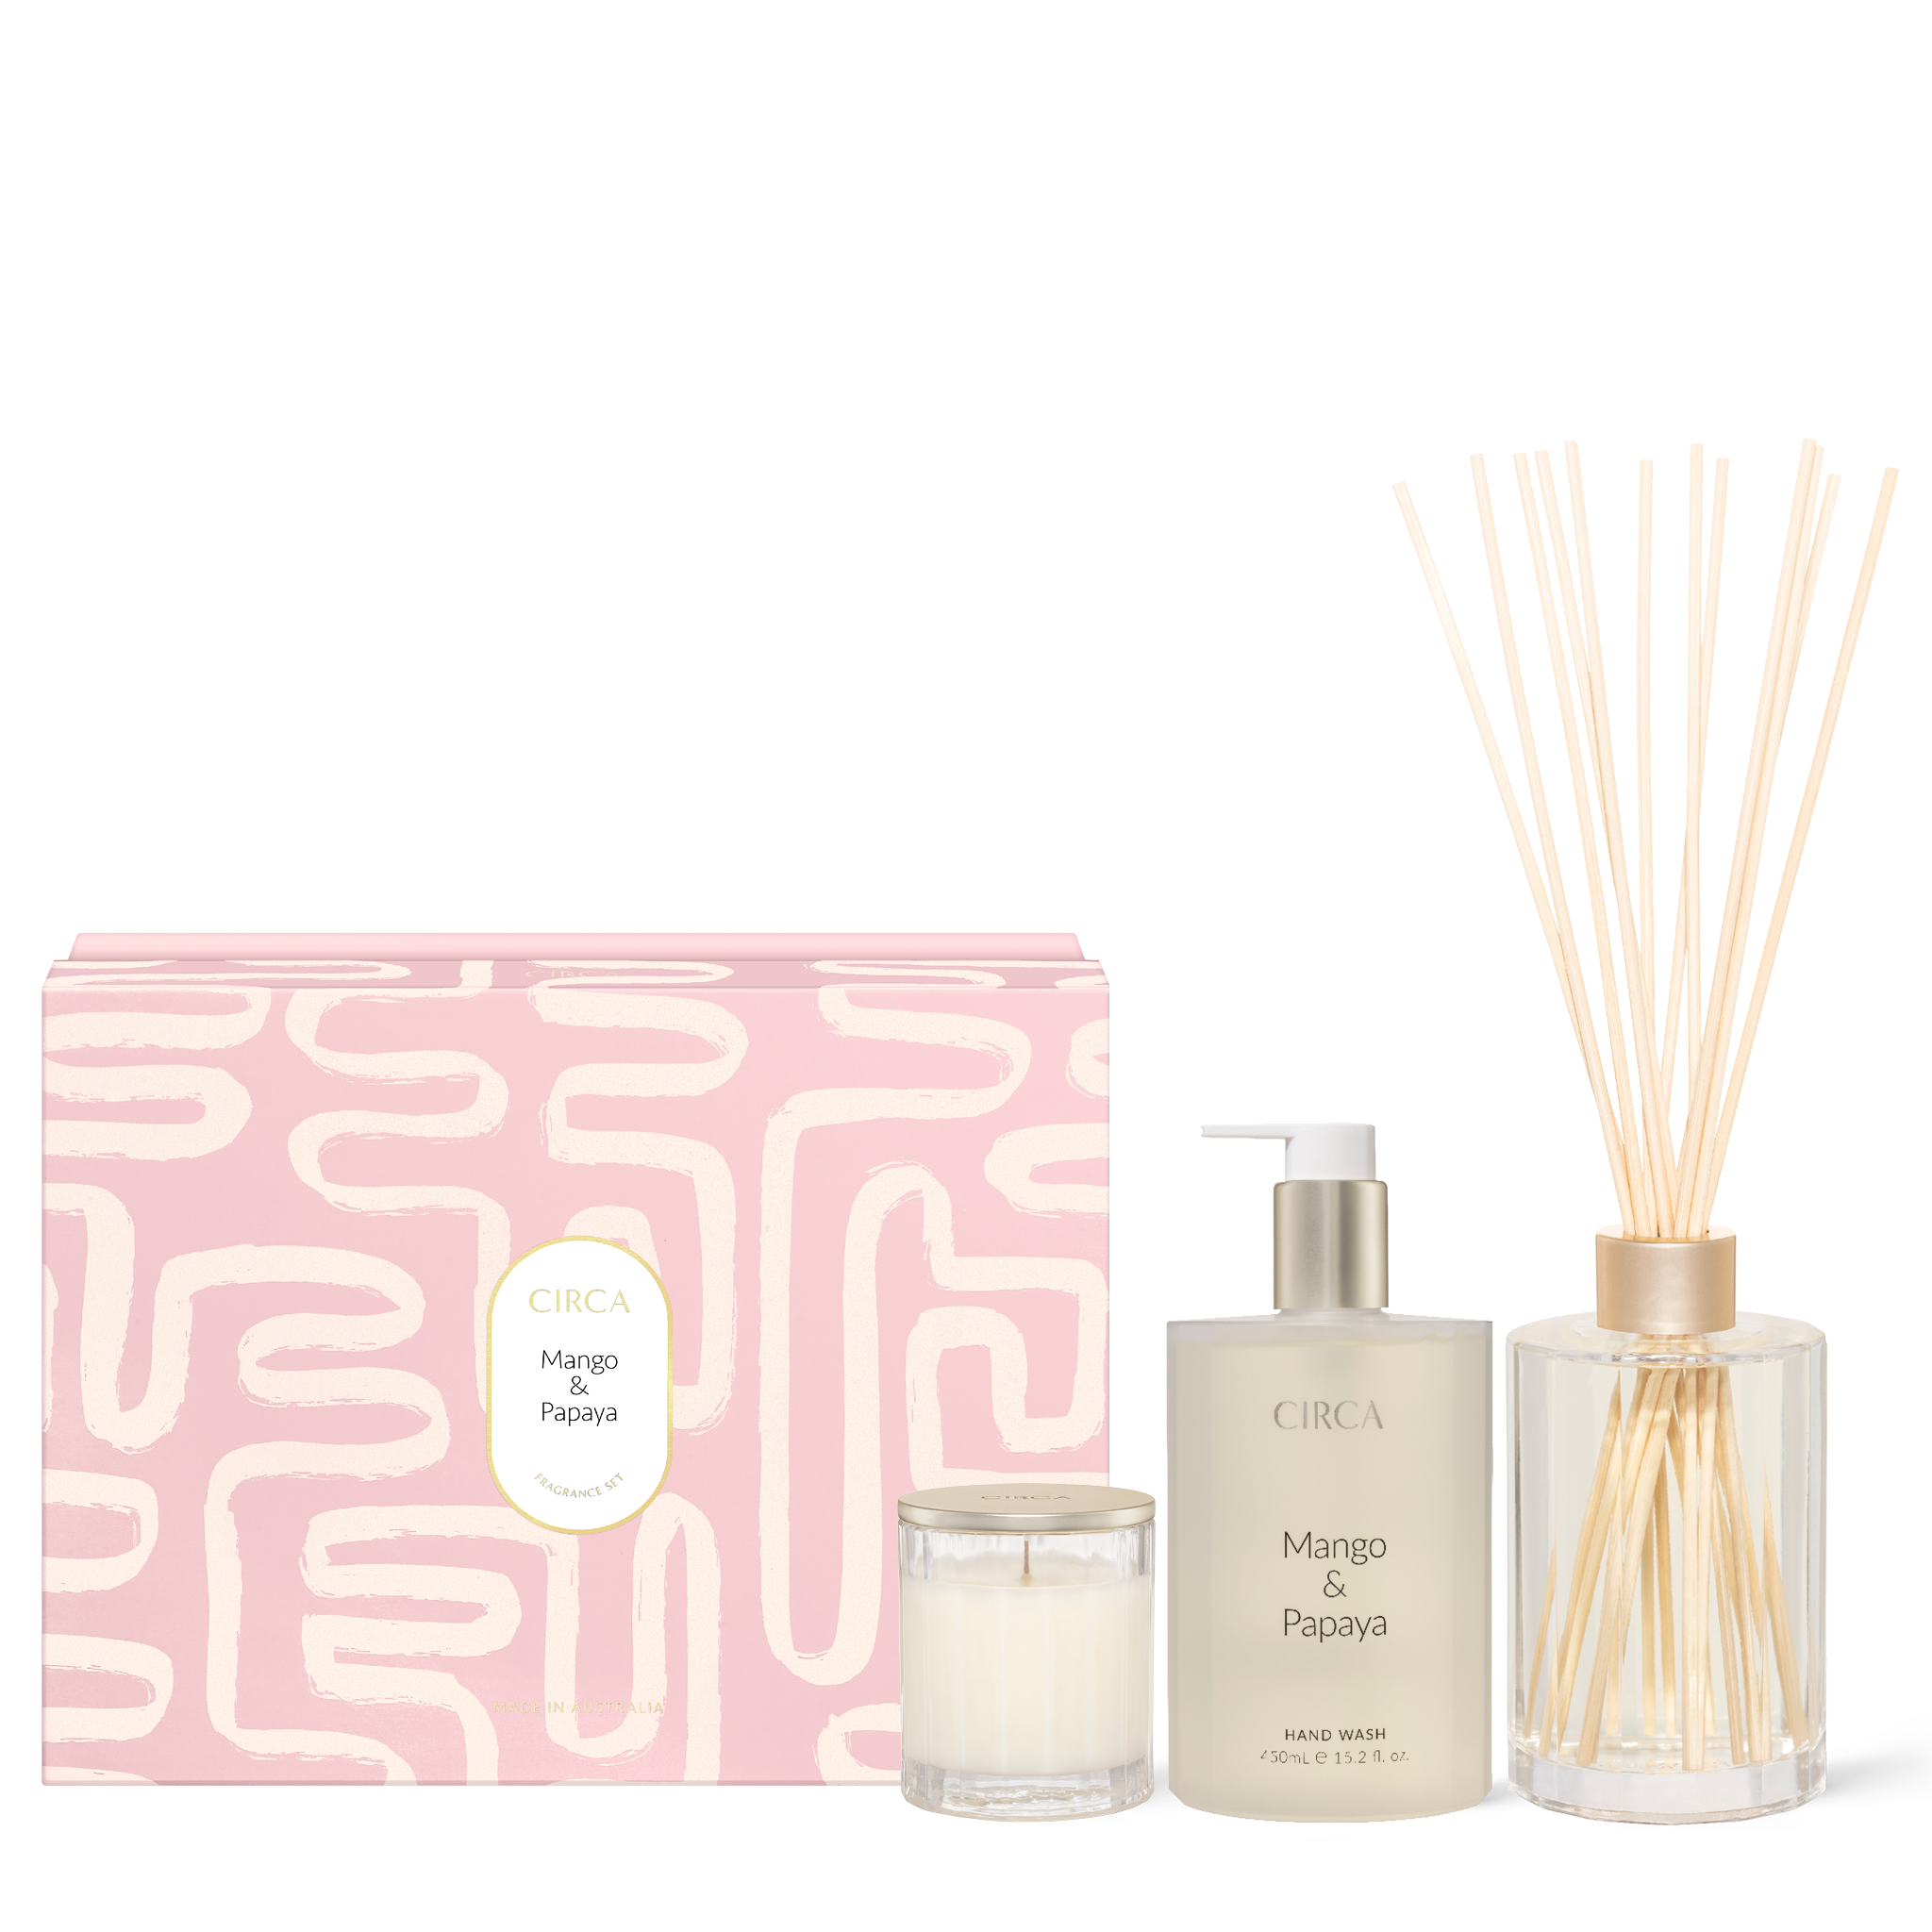 MANGO & PAPAYA Fragrance Gift Set